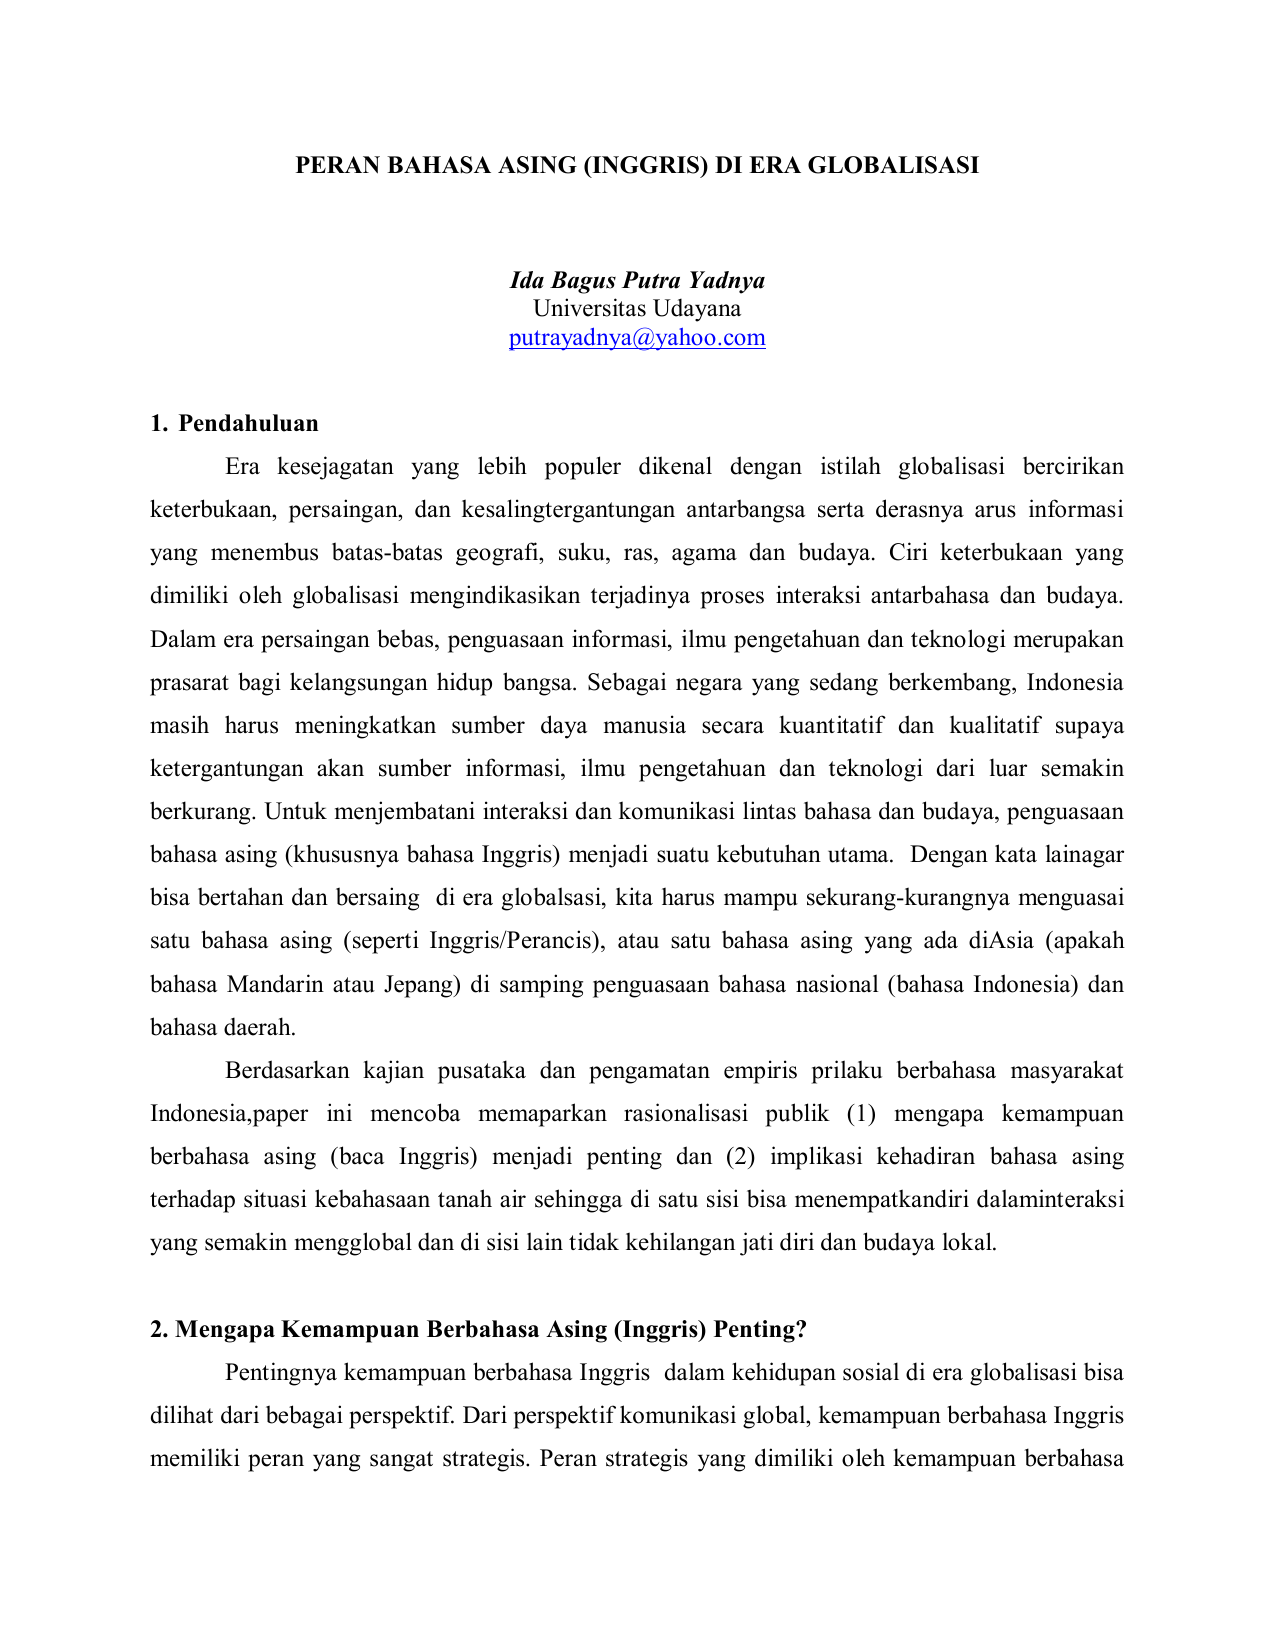 makalah tentang bahasa indonesia di era globalisasi